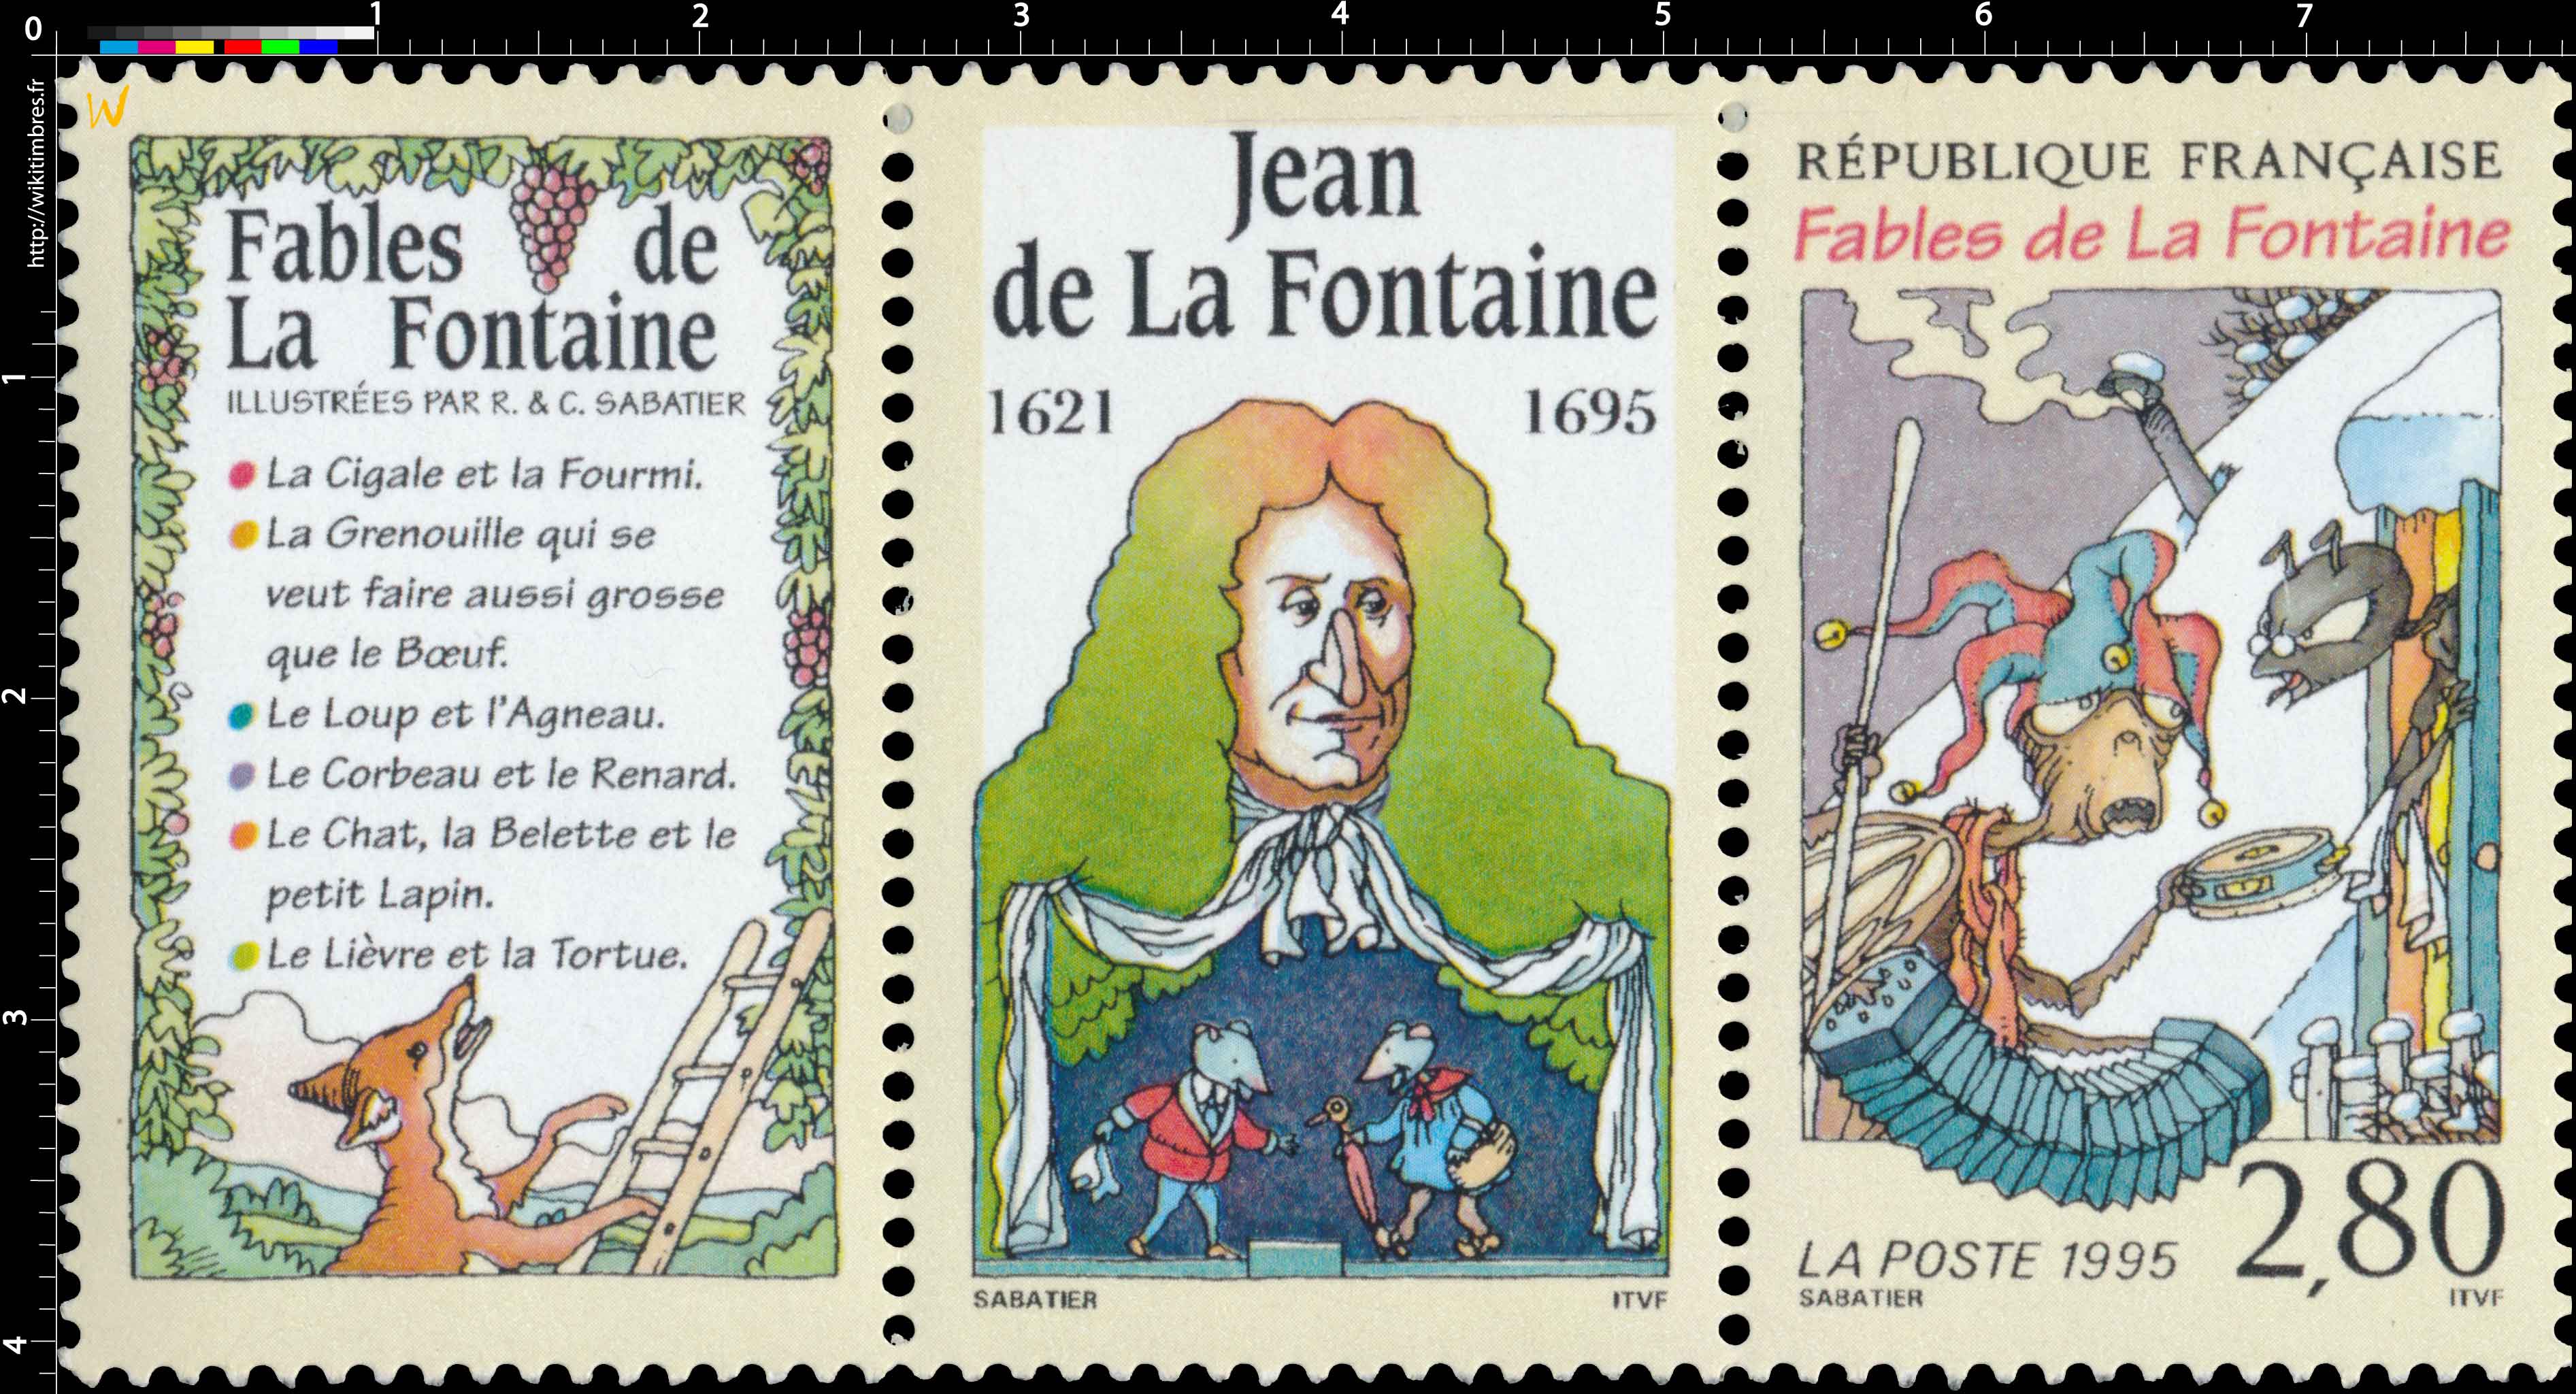 1995 Fables de la Fontaine